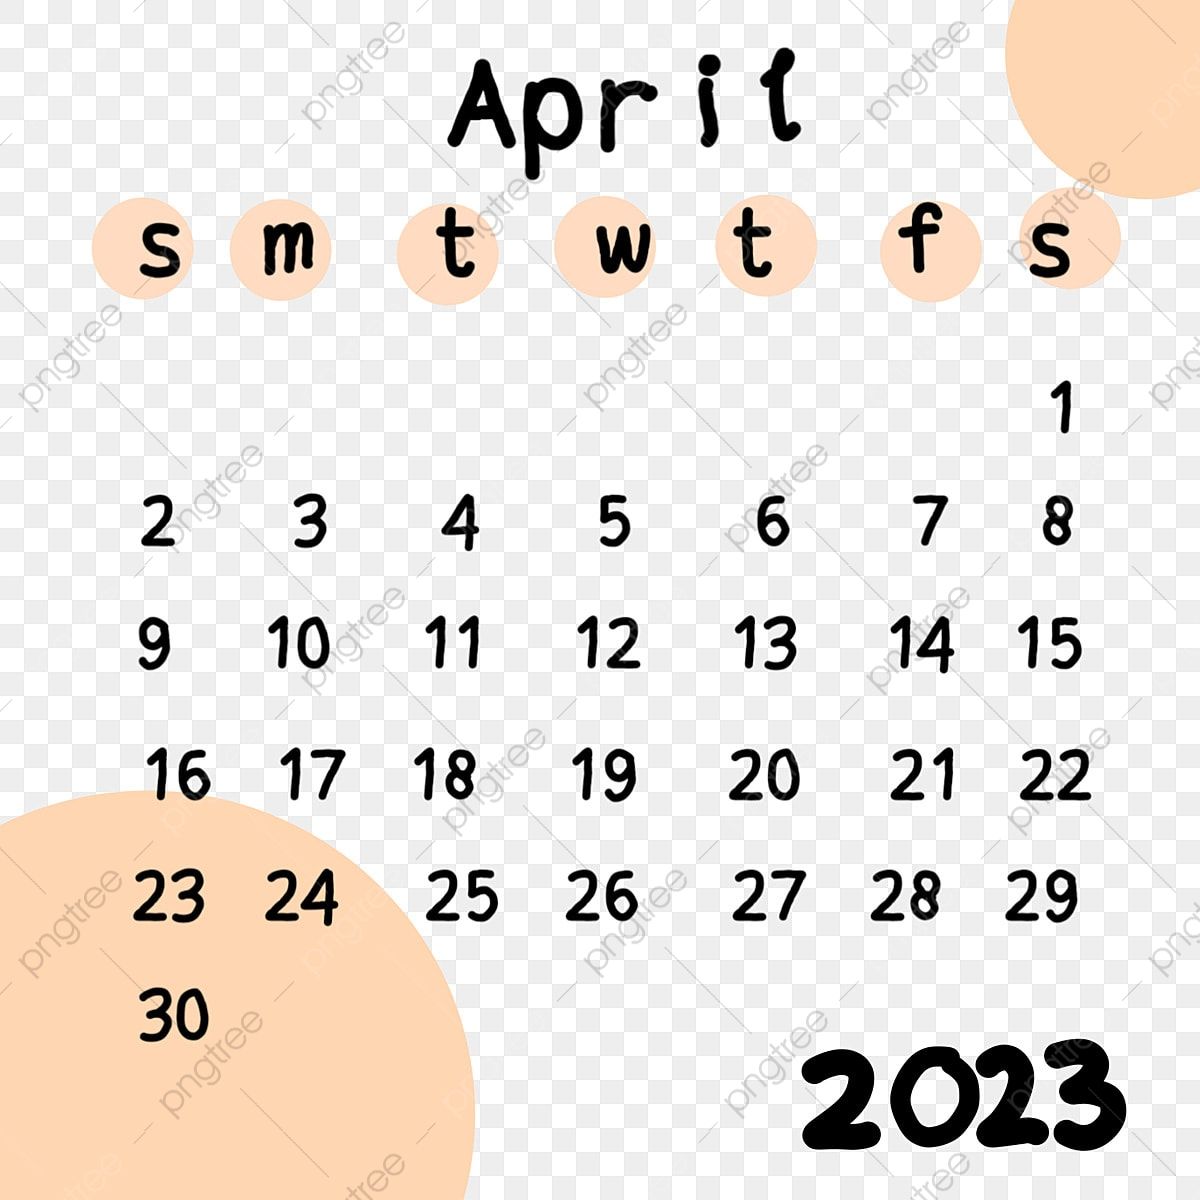  2023 Kalender Hintergrundbild 1200x1200. Calendar April 2023 PNG Image, Calendar April 2023 With Pastel Background, Calendar April, 2023 PNG Image For Free Download. Minimalist calendar, Mini calendars, Calendar